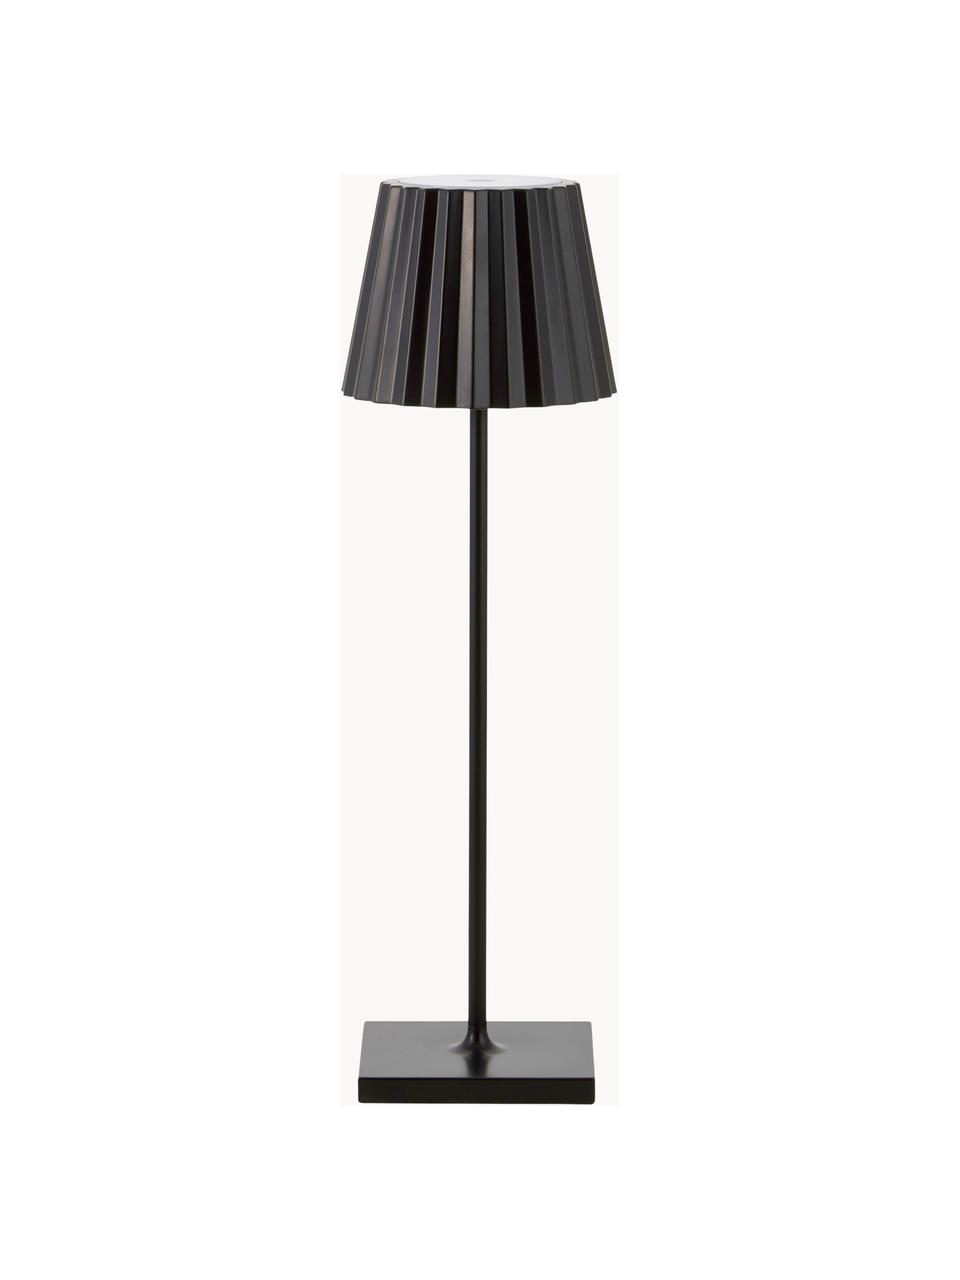 Lampada mobile da tavolo per esterni a LED  dimmerabile Trellia, Paralume: alluminio verniciato, Nero, Ø 15 x Alt. 38 cm